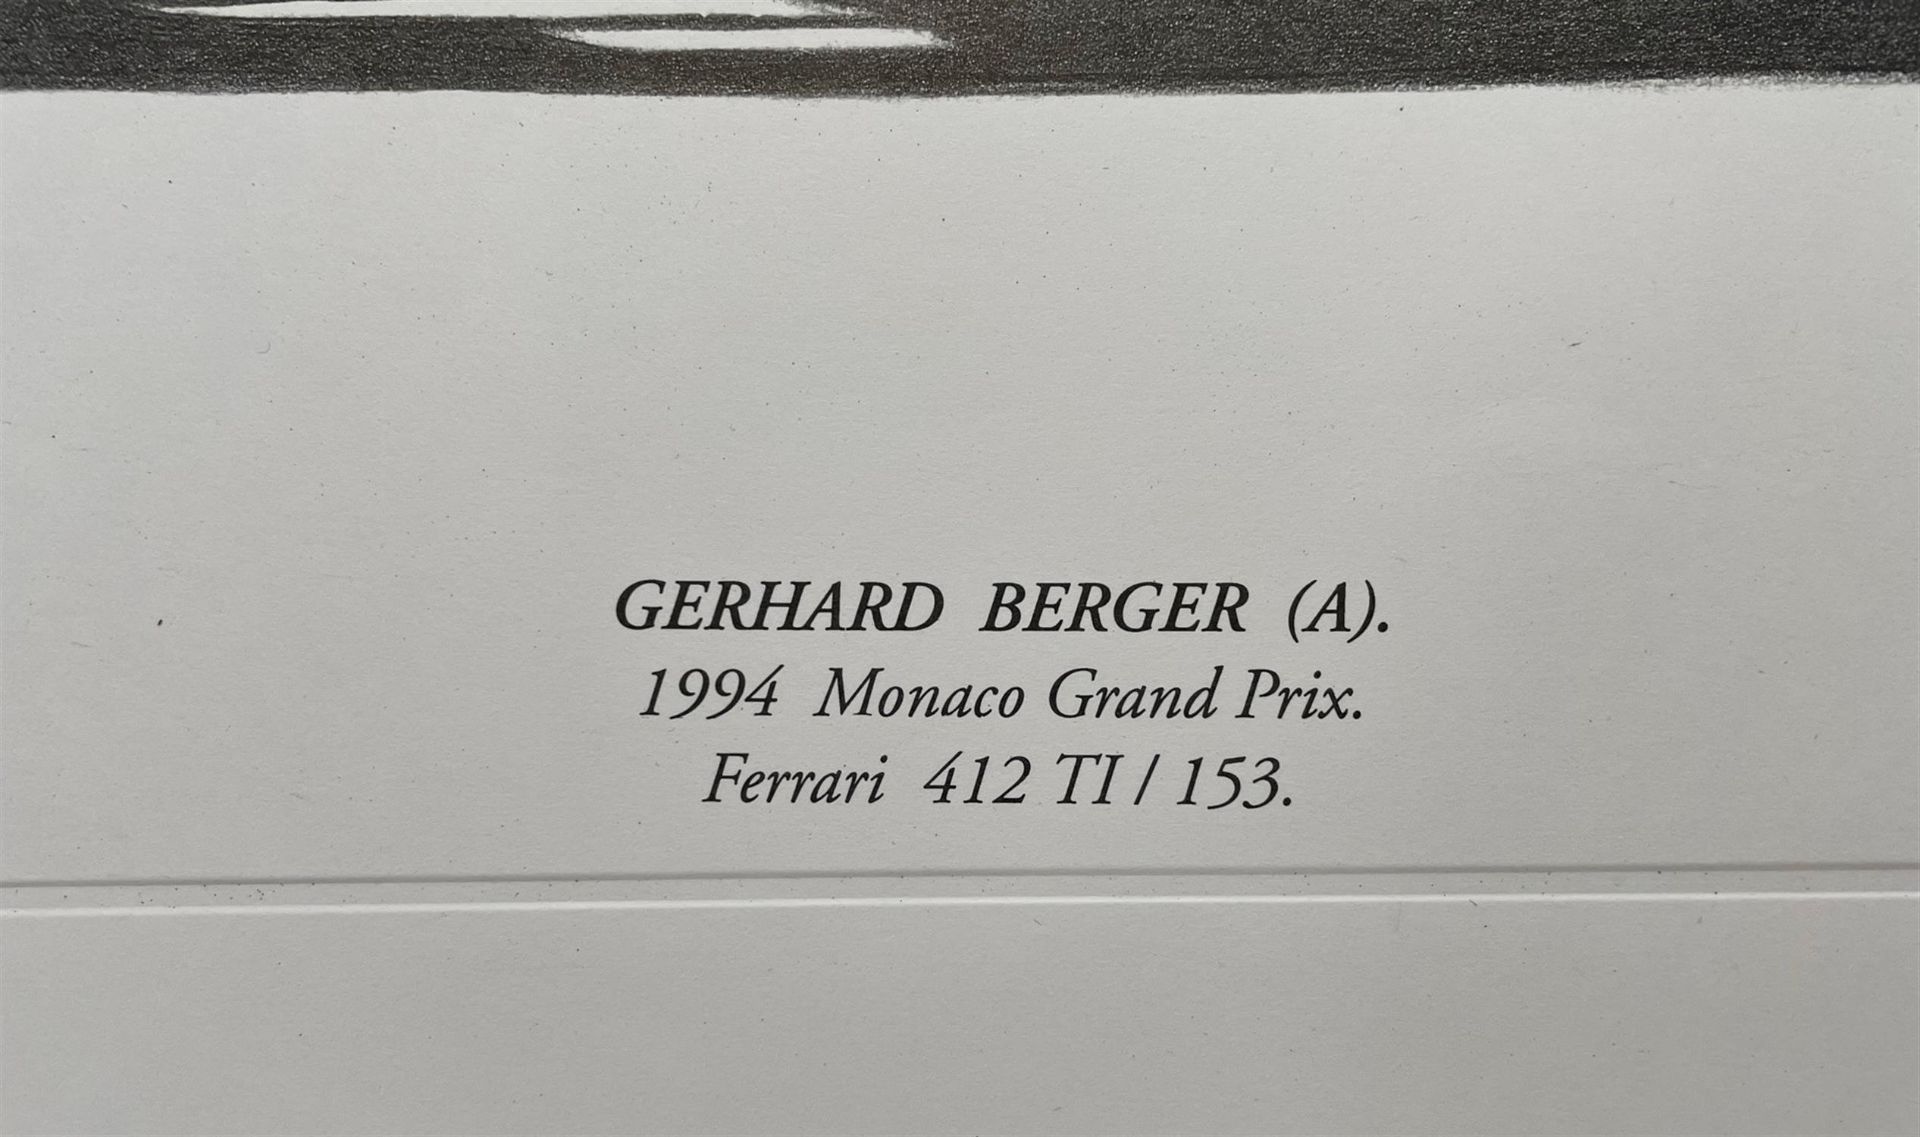 Gerhard Berger at the 1994 Monaco Grand Prix driving his Ferrari 412* - Image 2 of 3